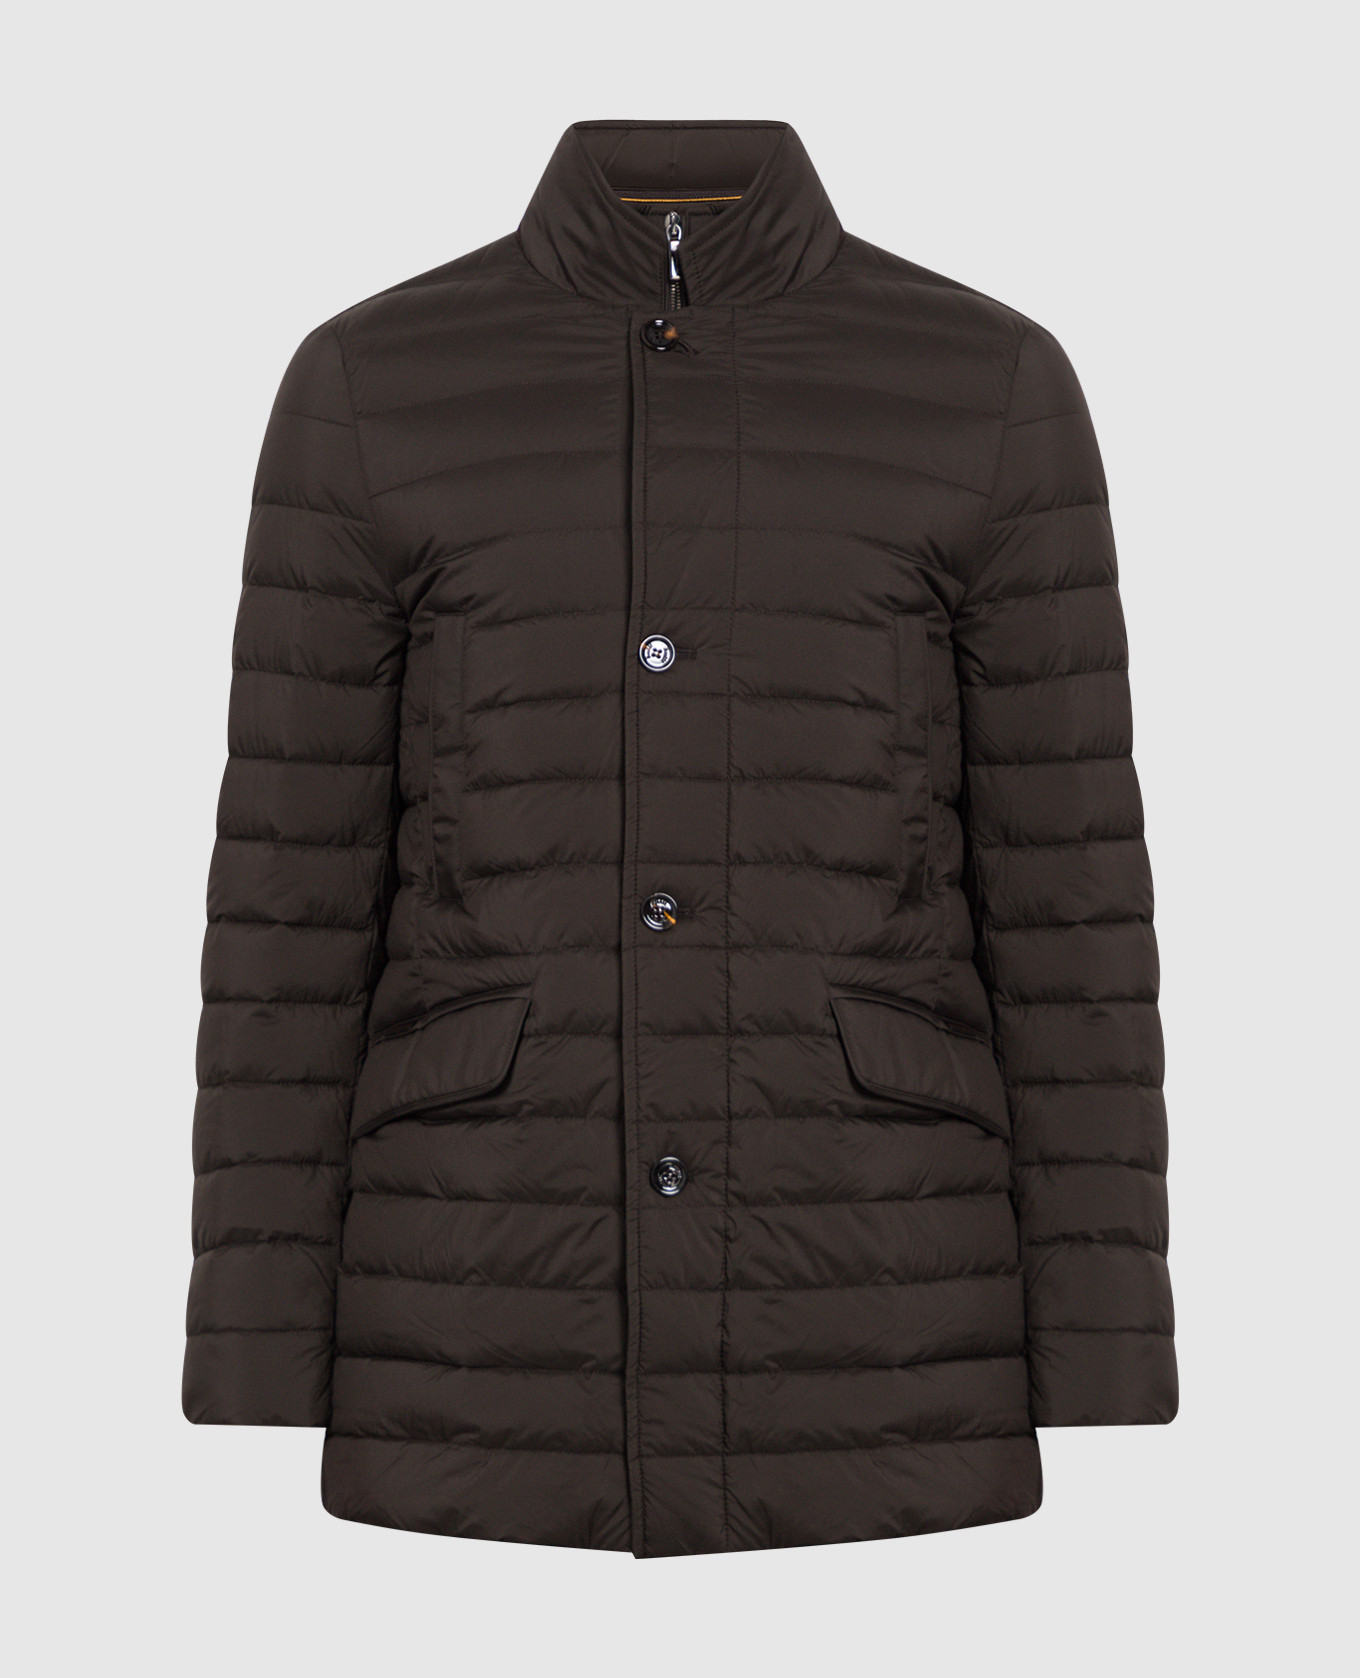 Темно-коричневая куртка PONTI-S3 с простежкой в виде горизонтальных полос